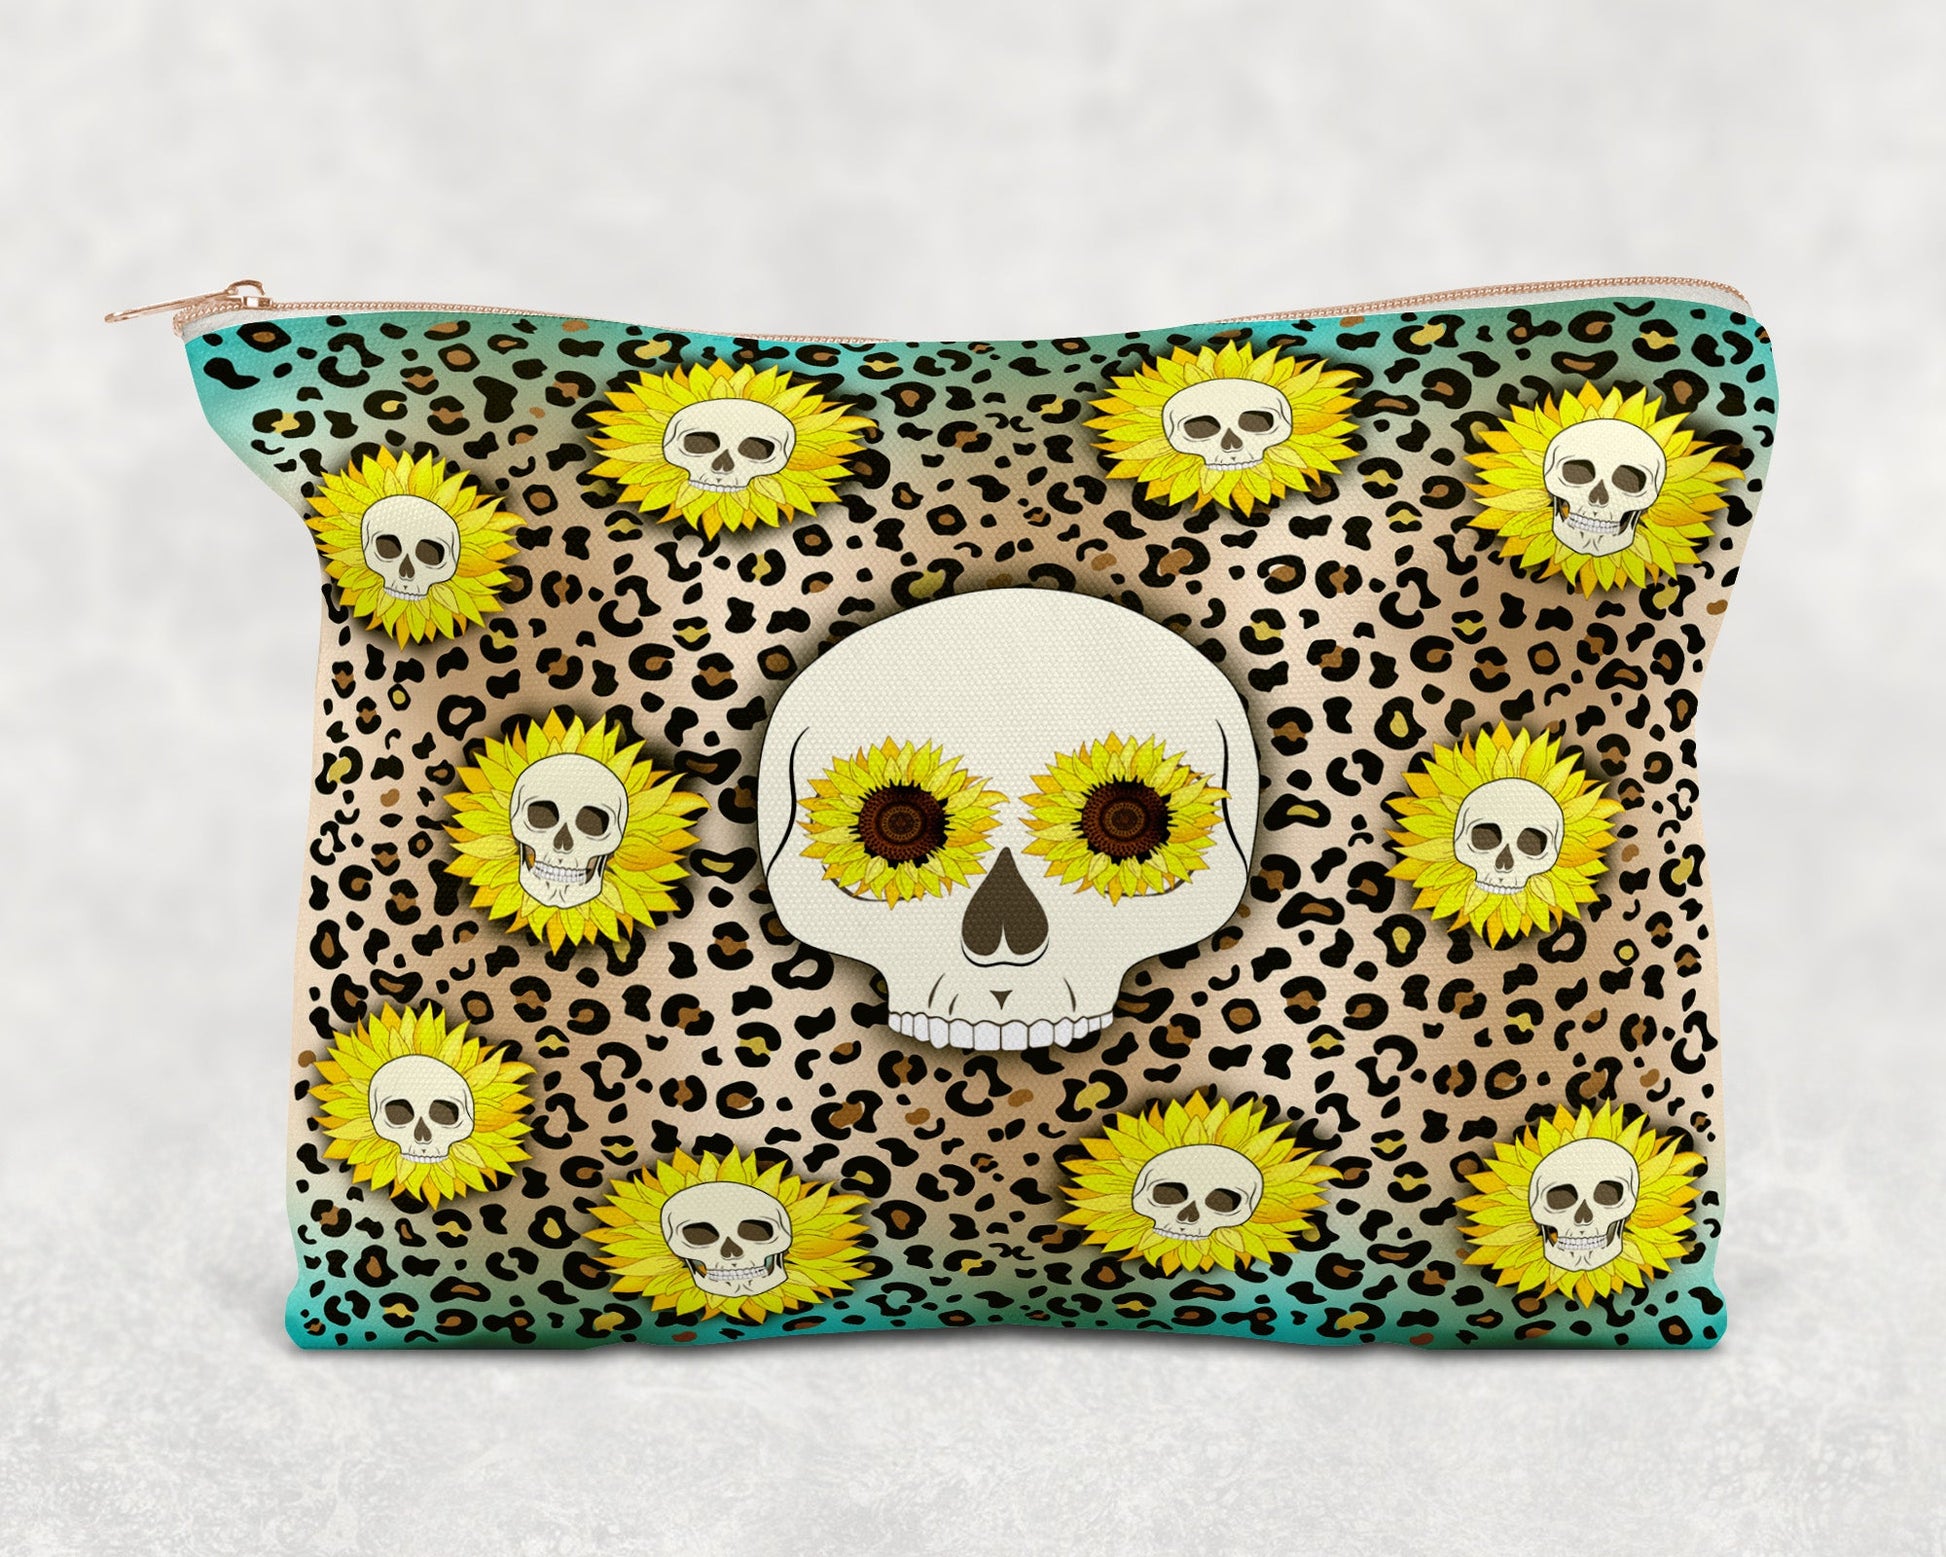 Leopard Print Skull Printed Canvas Zipper Bag - Bag